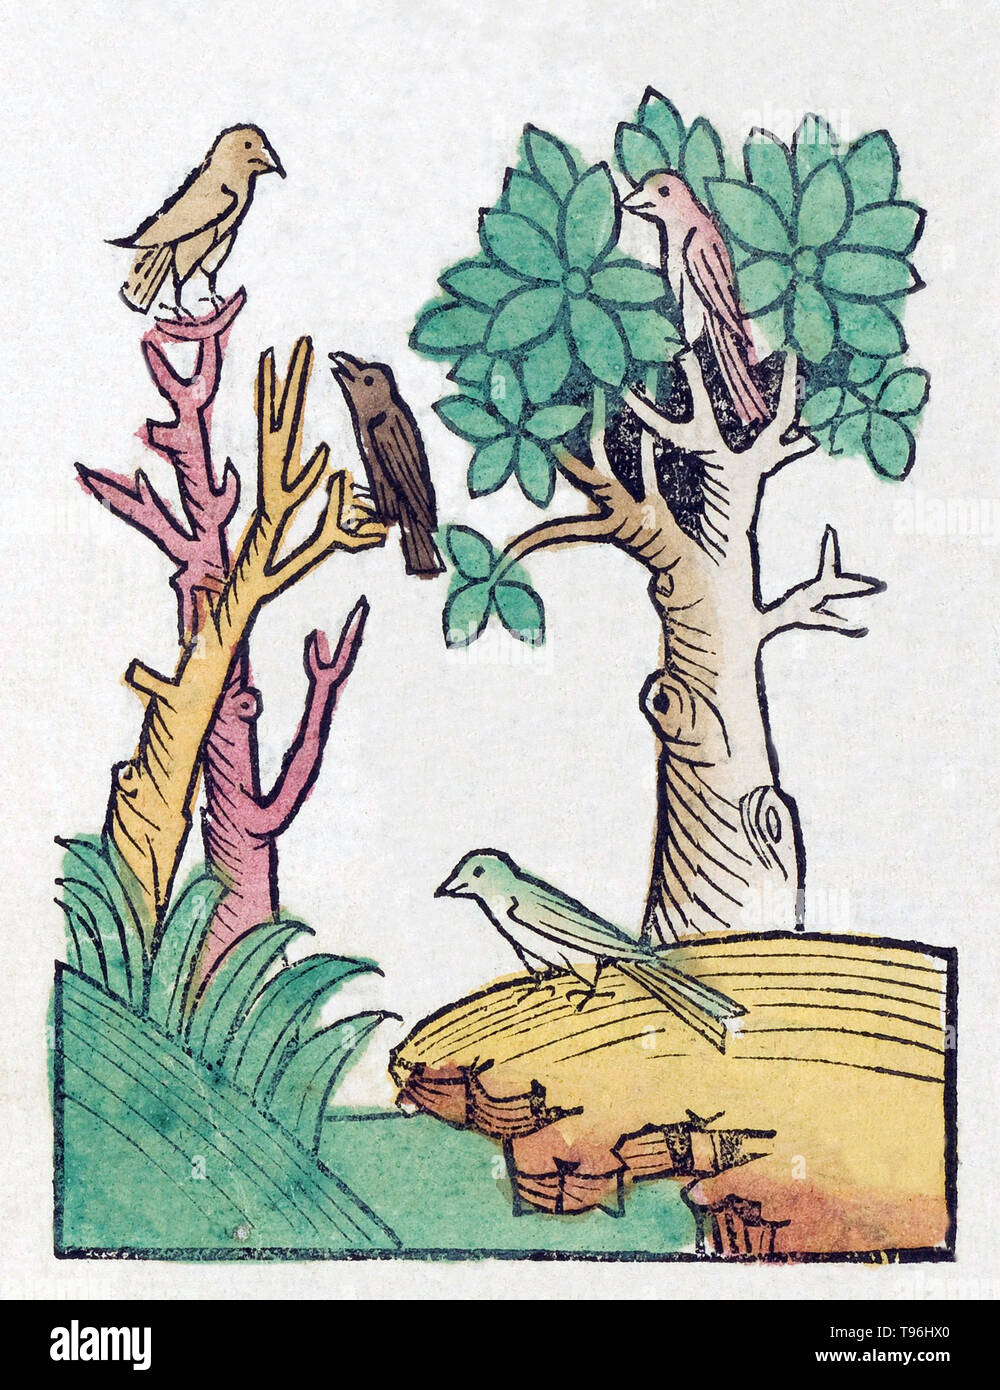 Les oiseaux non identifiés dans les arbres. L'Hortus Sanitatis (Jardin de la santé), la première encyclopédie d'histoire naturelle, a été publié par Jacob Meydenbach en Allemagne, 1491. Il décrit des plantes et animaux (à la fois réelle et mythique) avec minéraux et de divers métiers, avec leur valeur thérapeutique et de la méthode de préparation. La gravure sur bois à la main, les illustrations sont stylisées mais souvent facilement reconnaissable. L'édition 1547. Banque D'Images